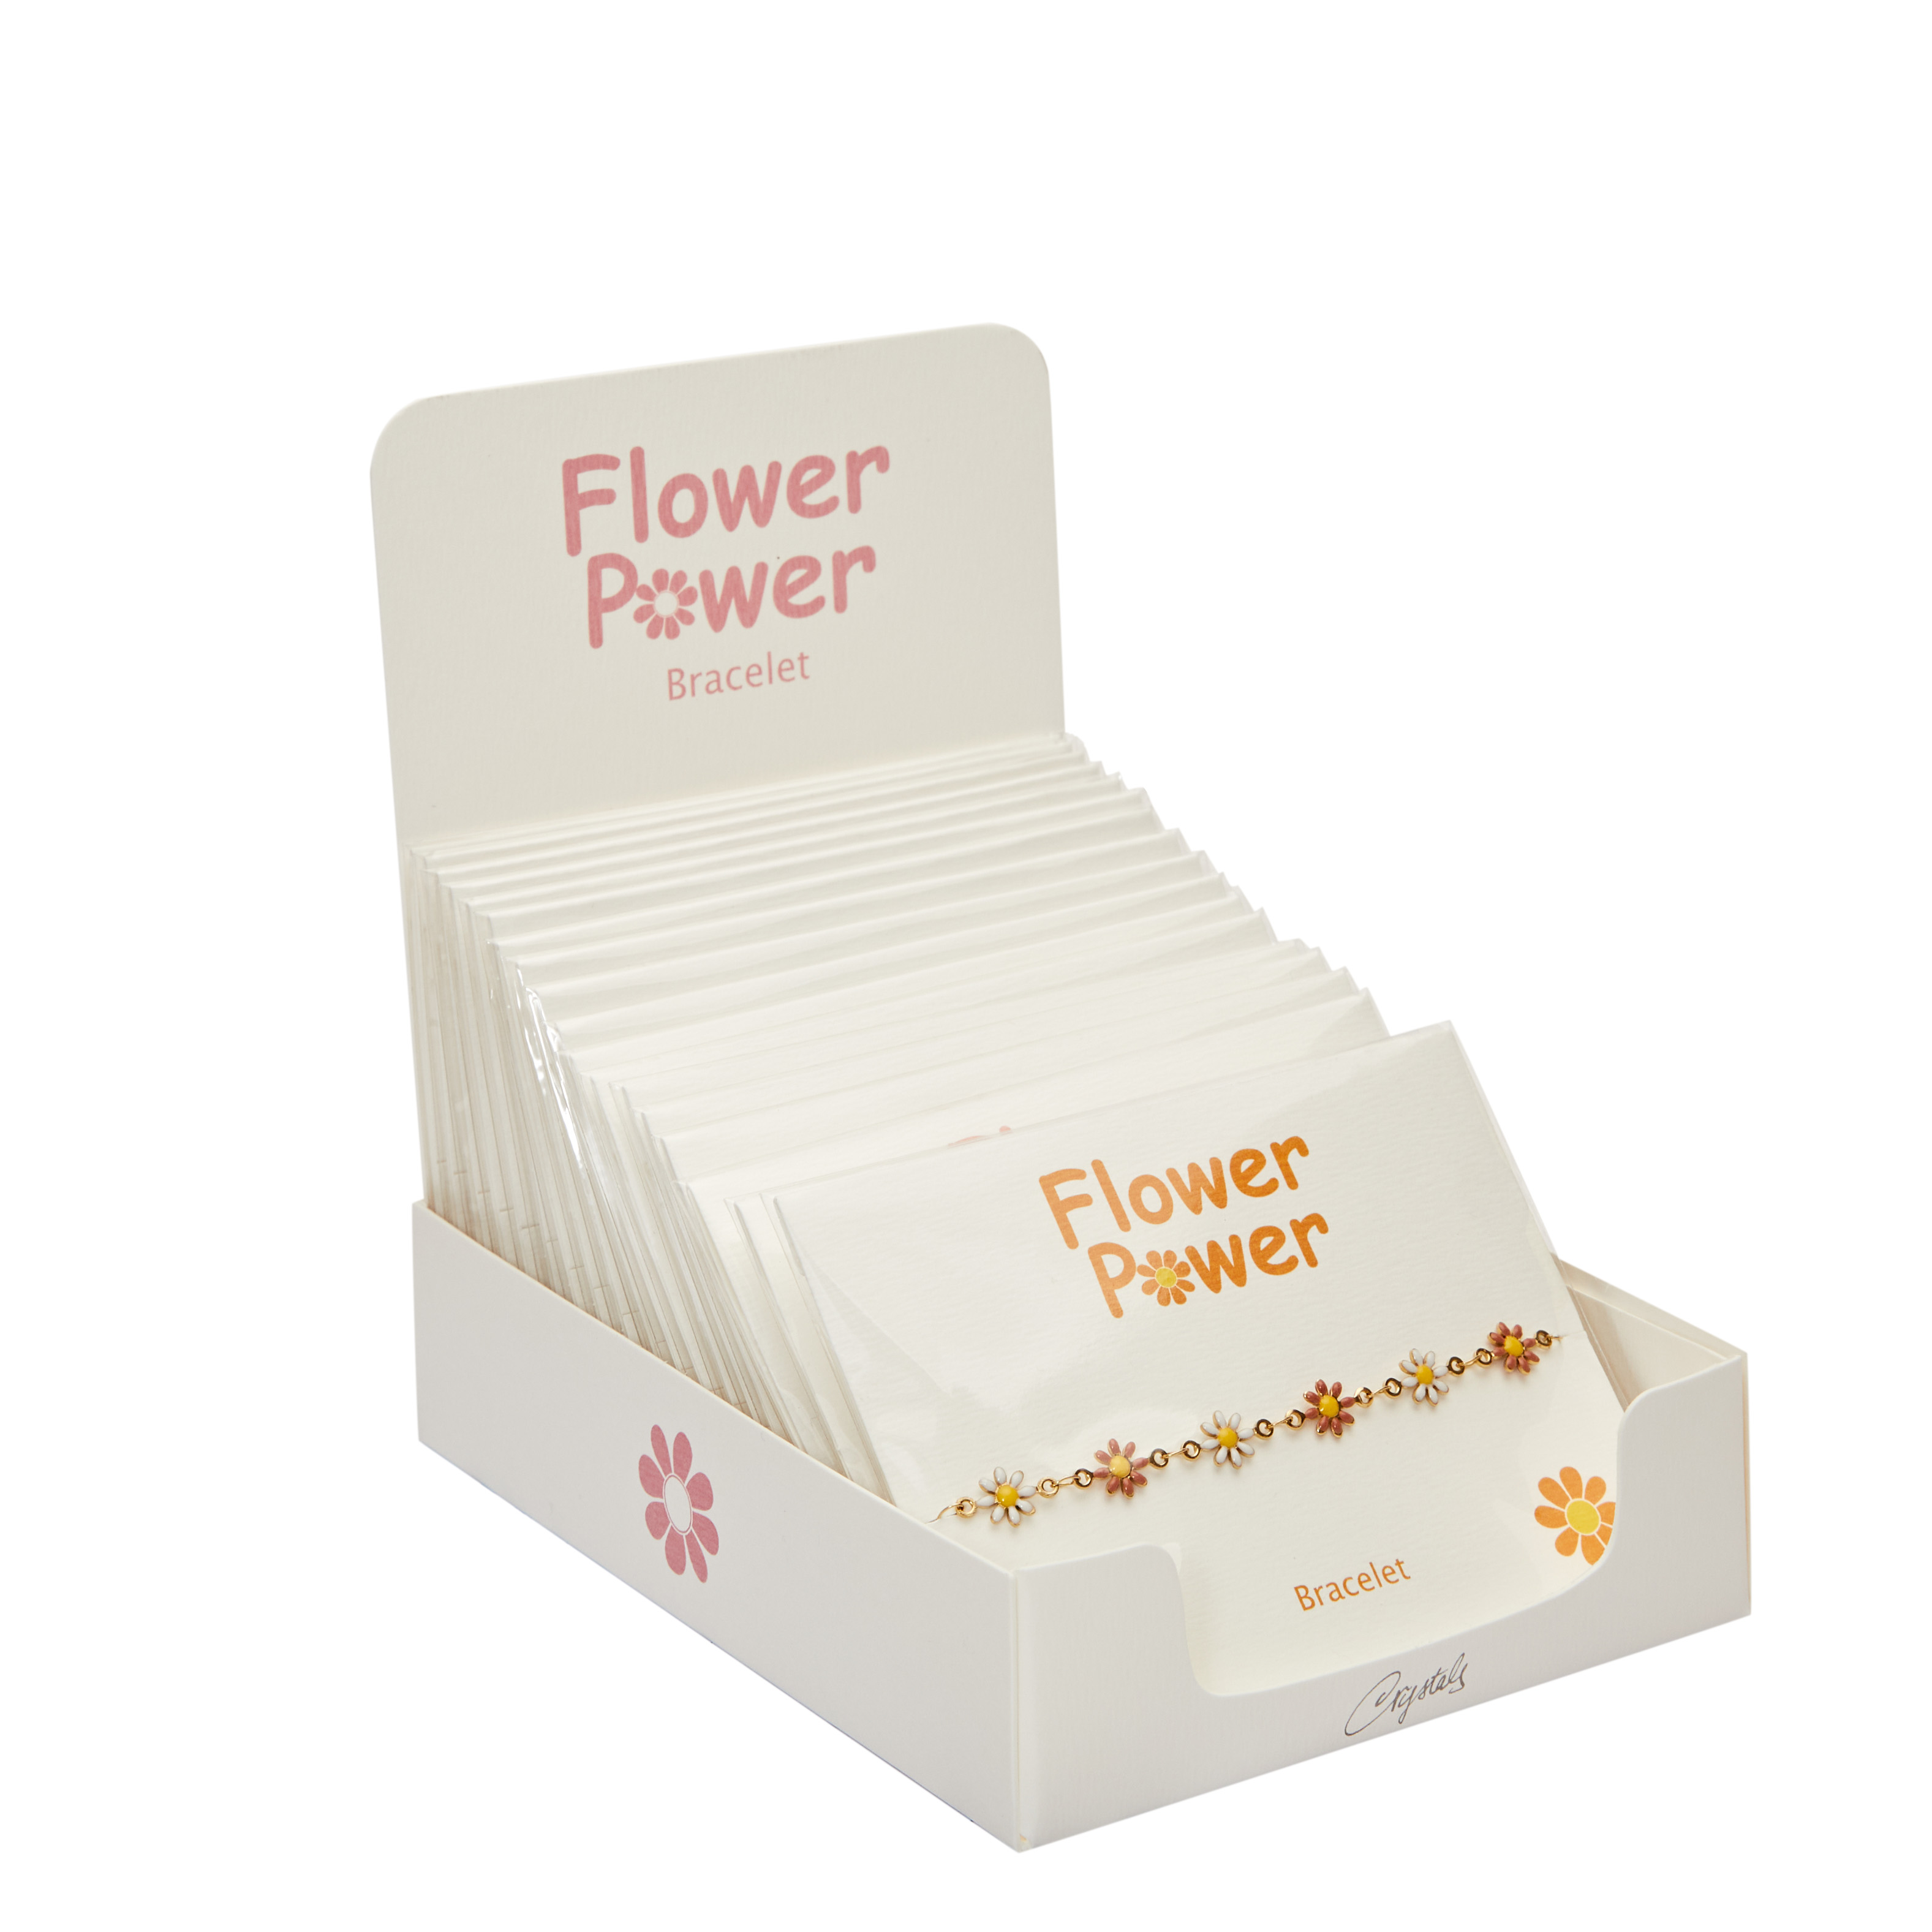 Display  package "Flower Power"